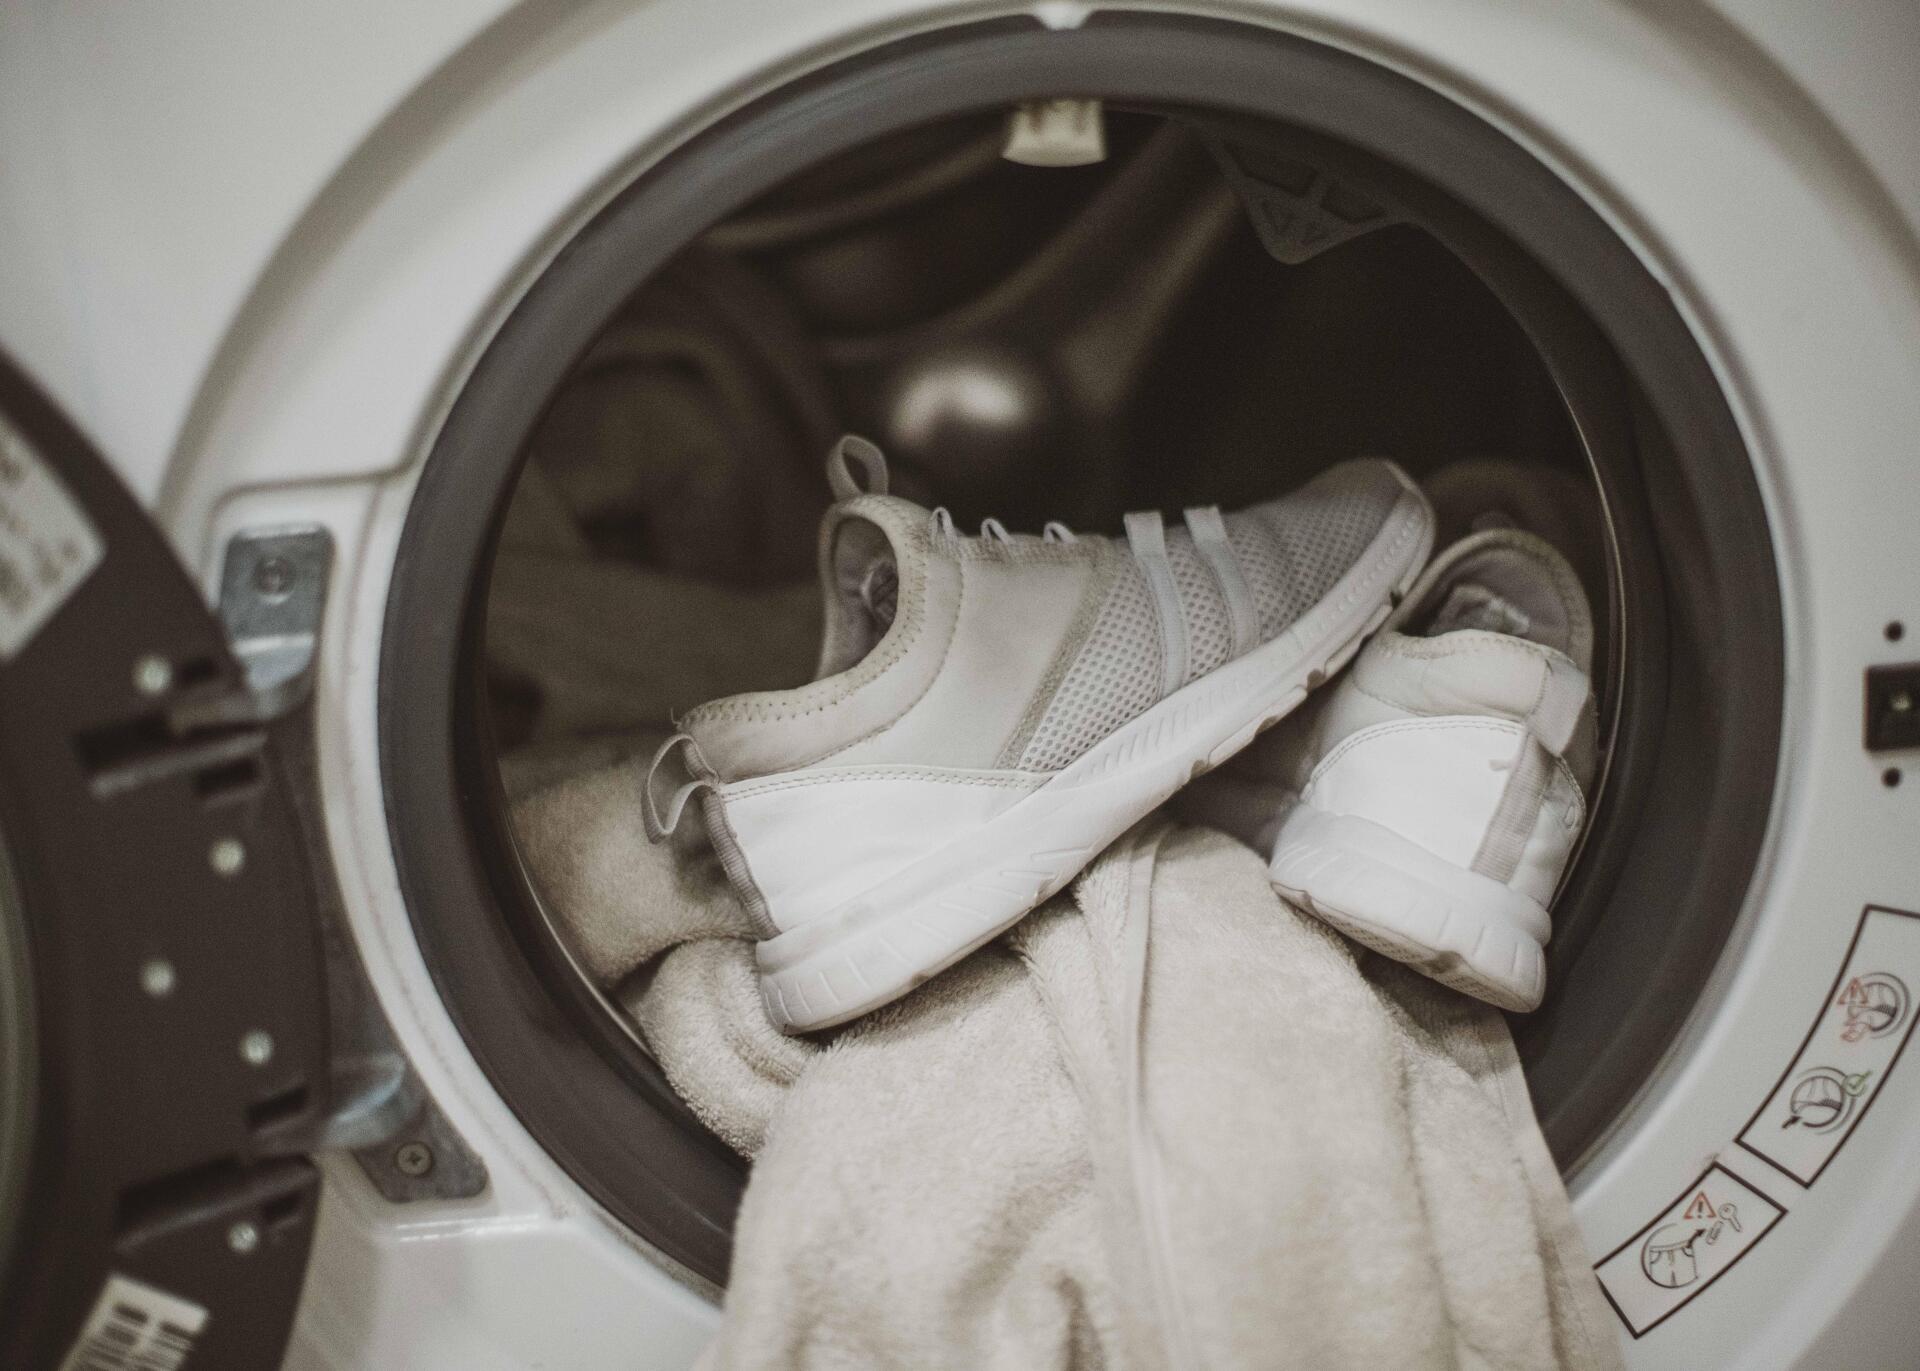 Como lavar o calçado na máquina de lavar roupa?